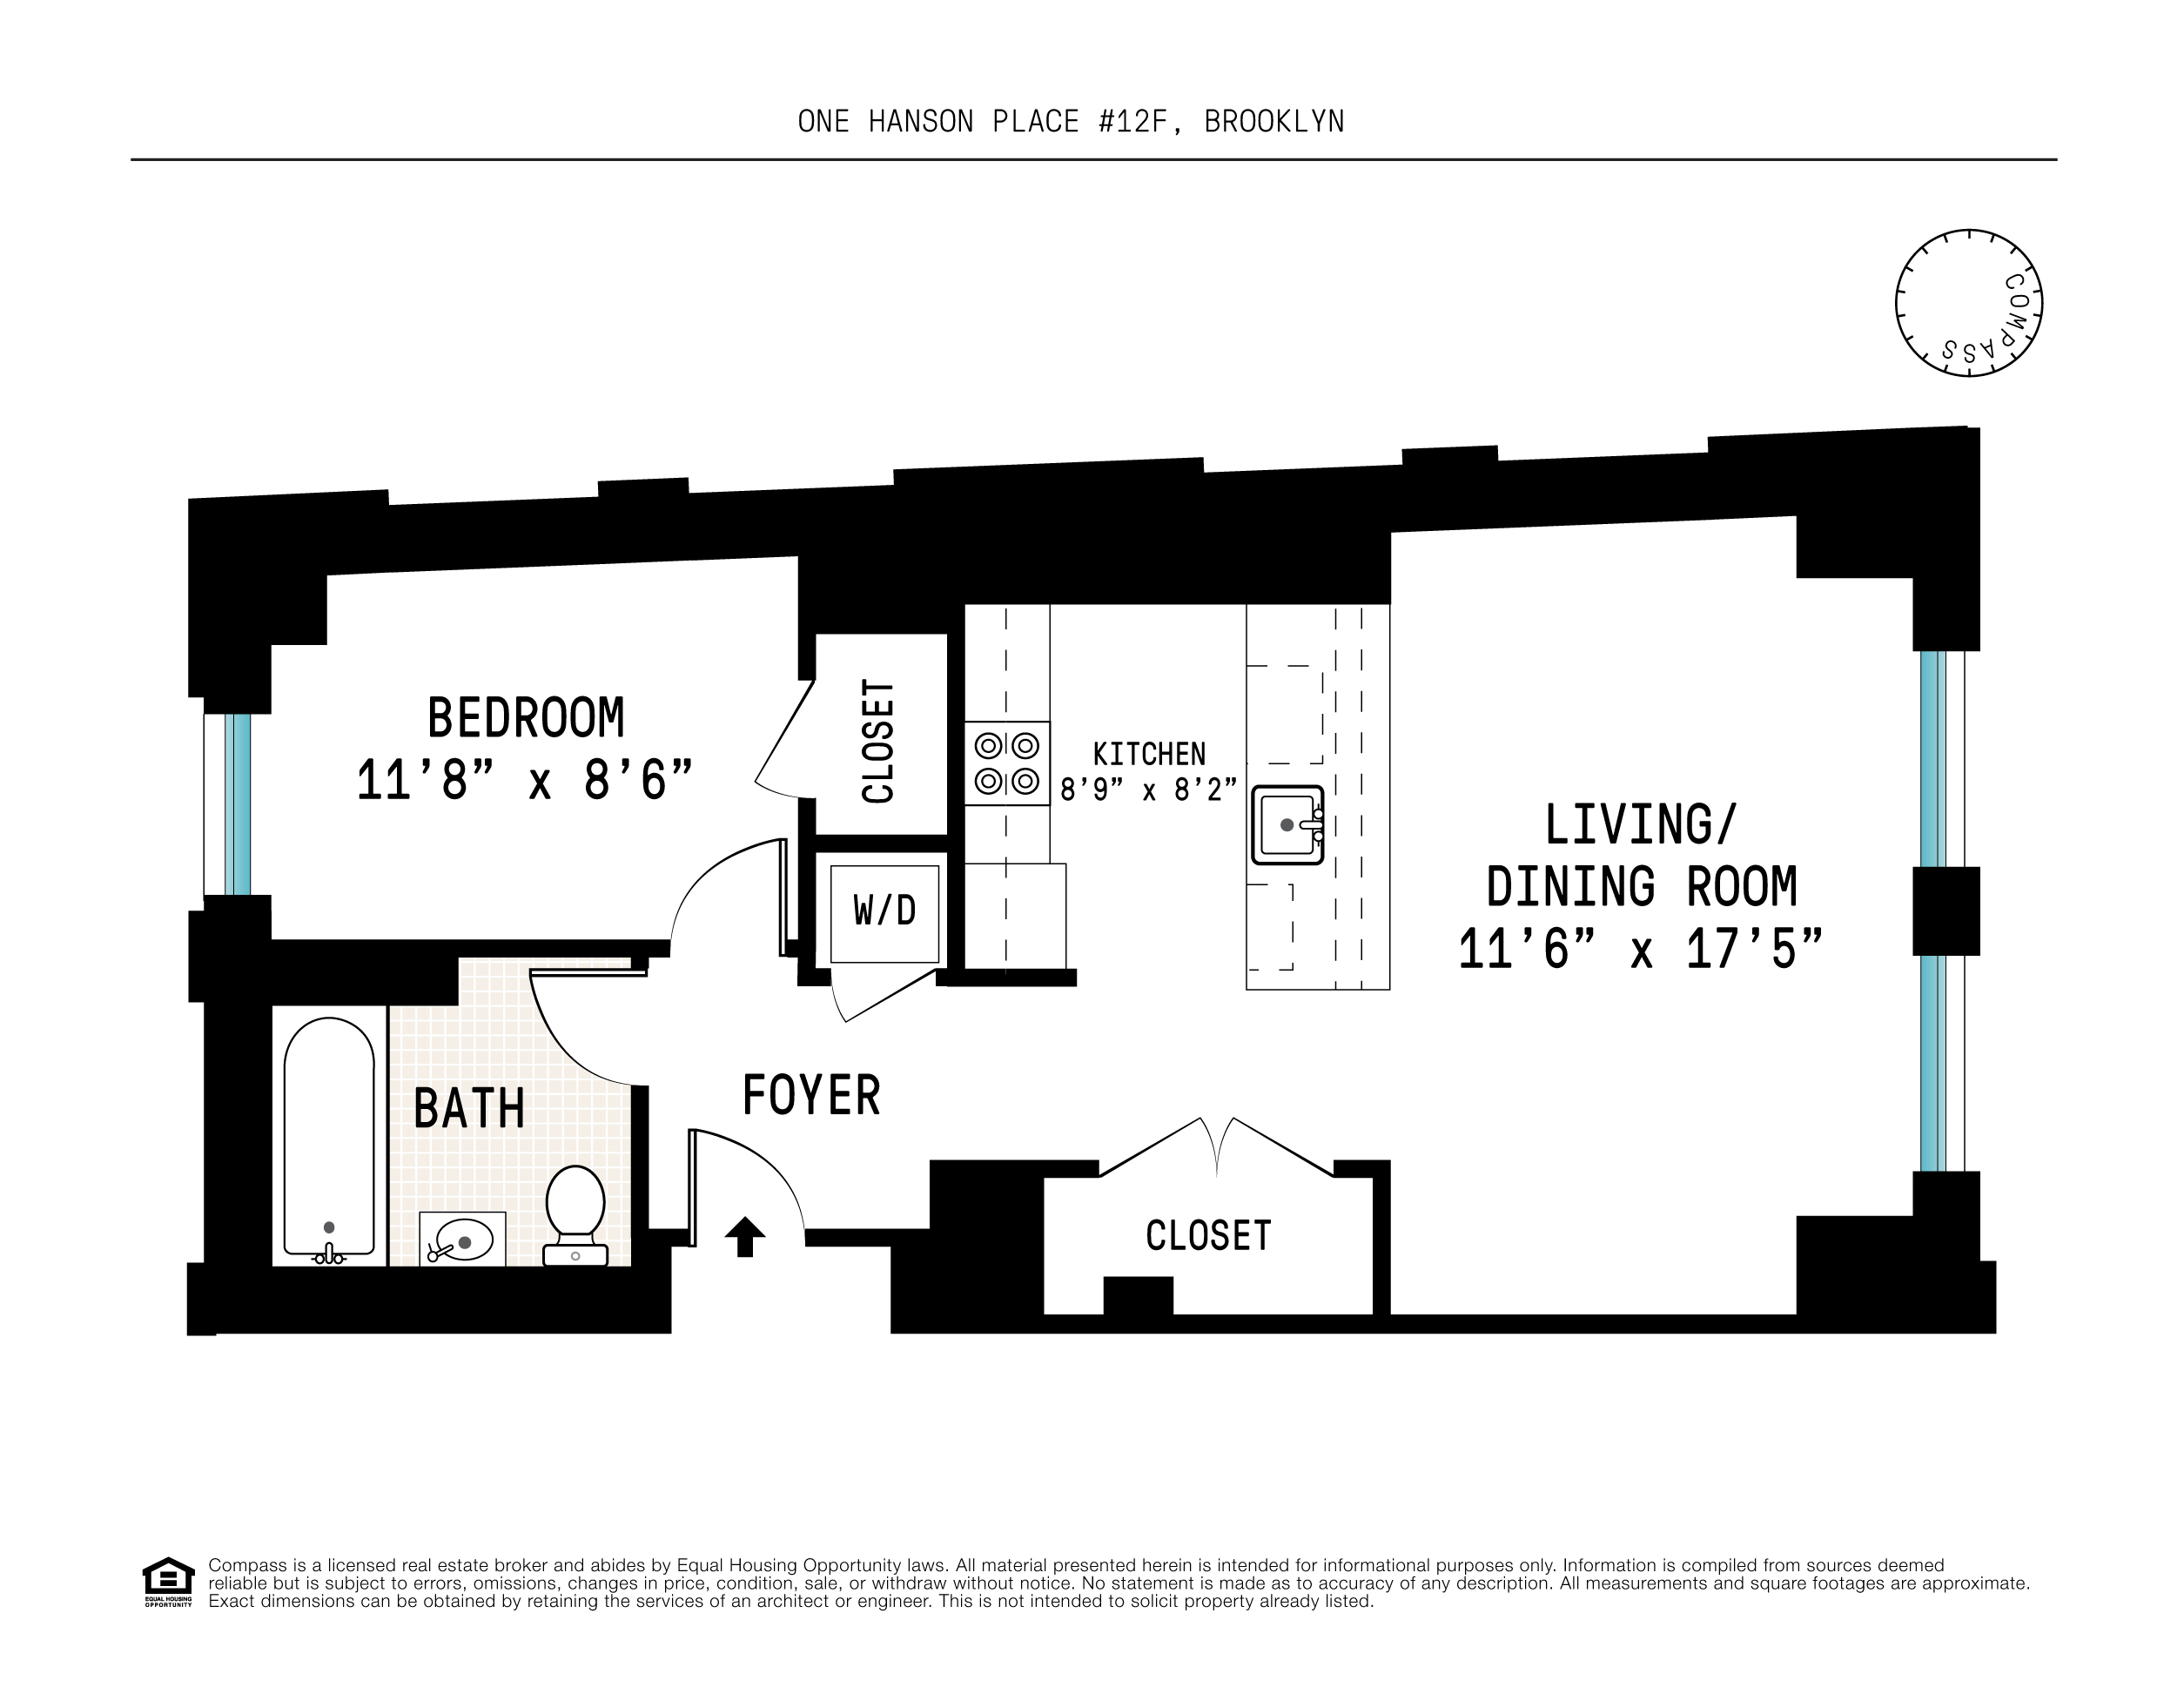 Floorplan for 1 Hanson Place, 12F